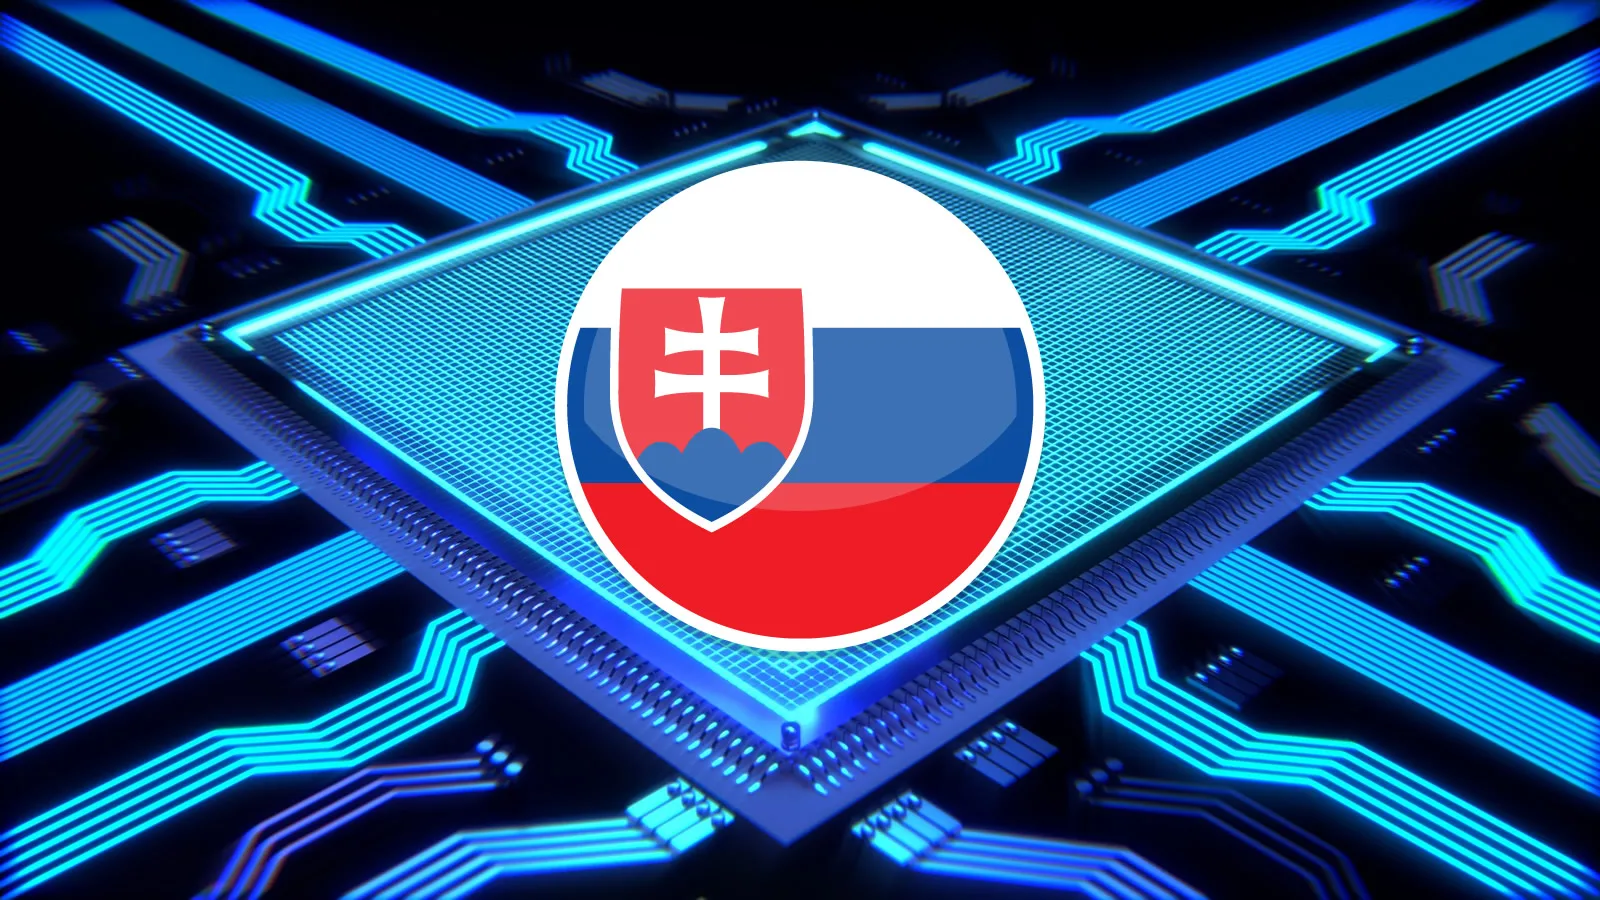 procesor slovensko jpg